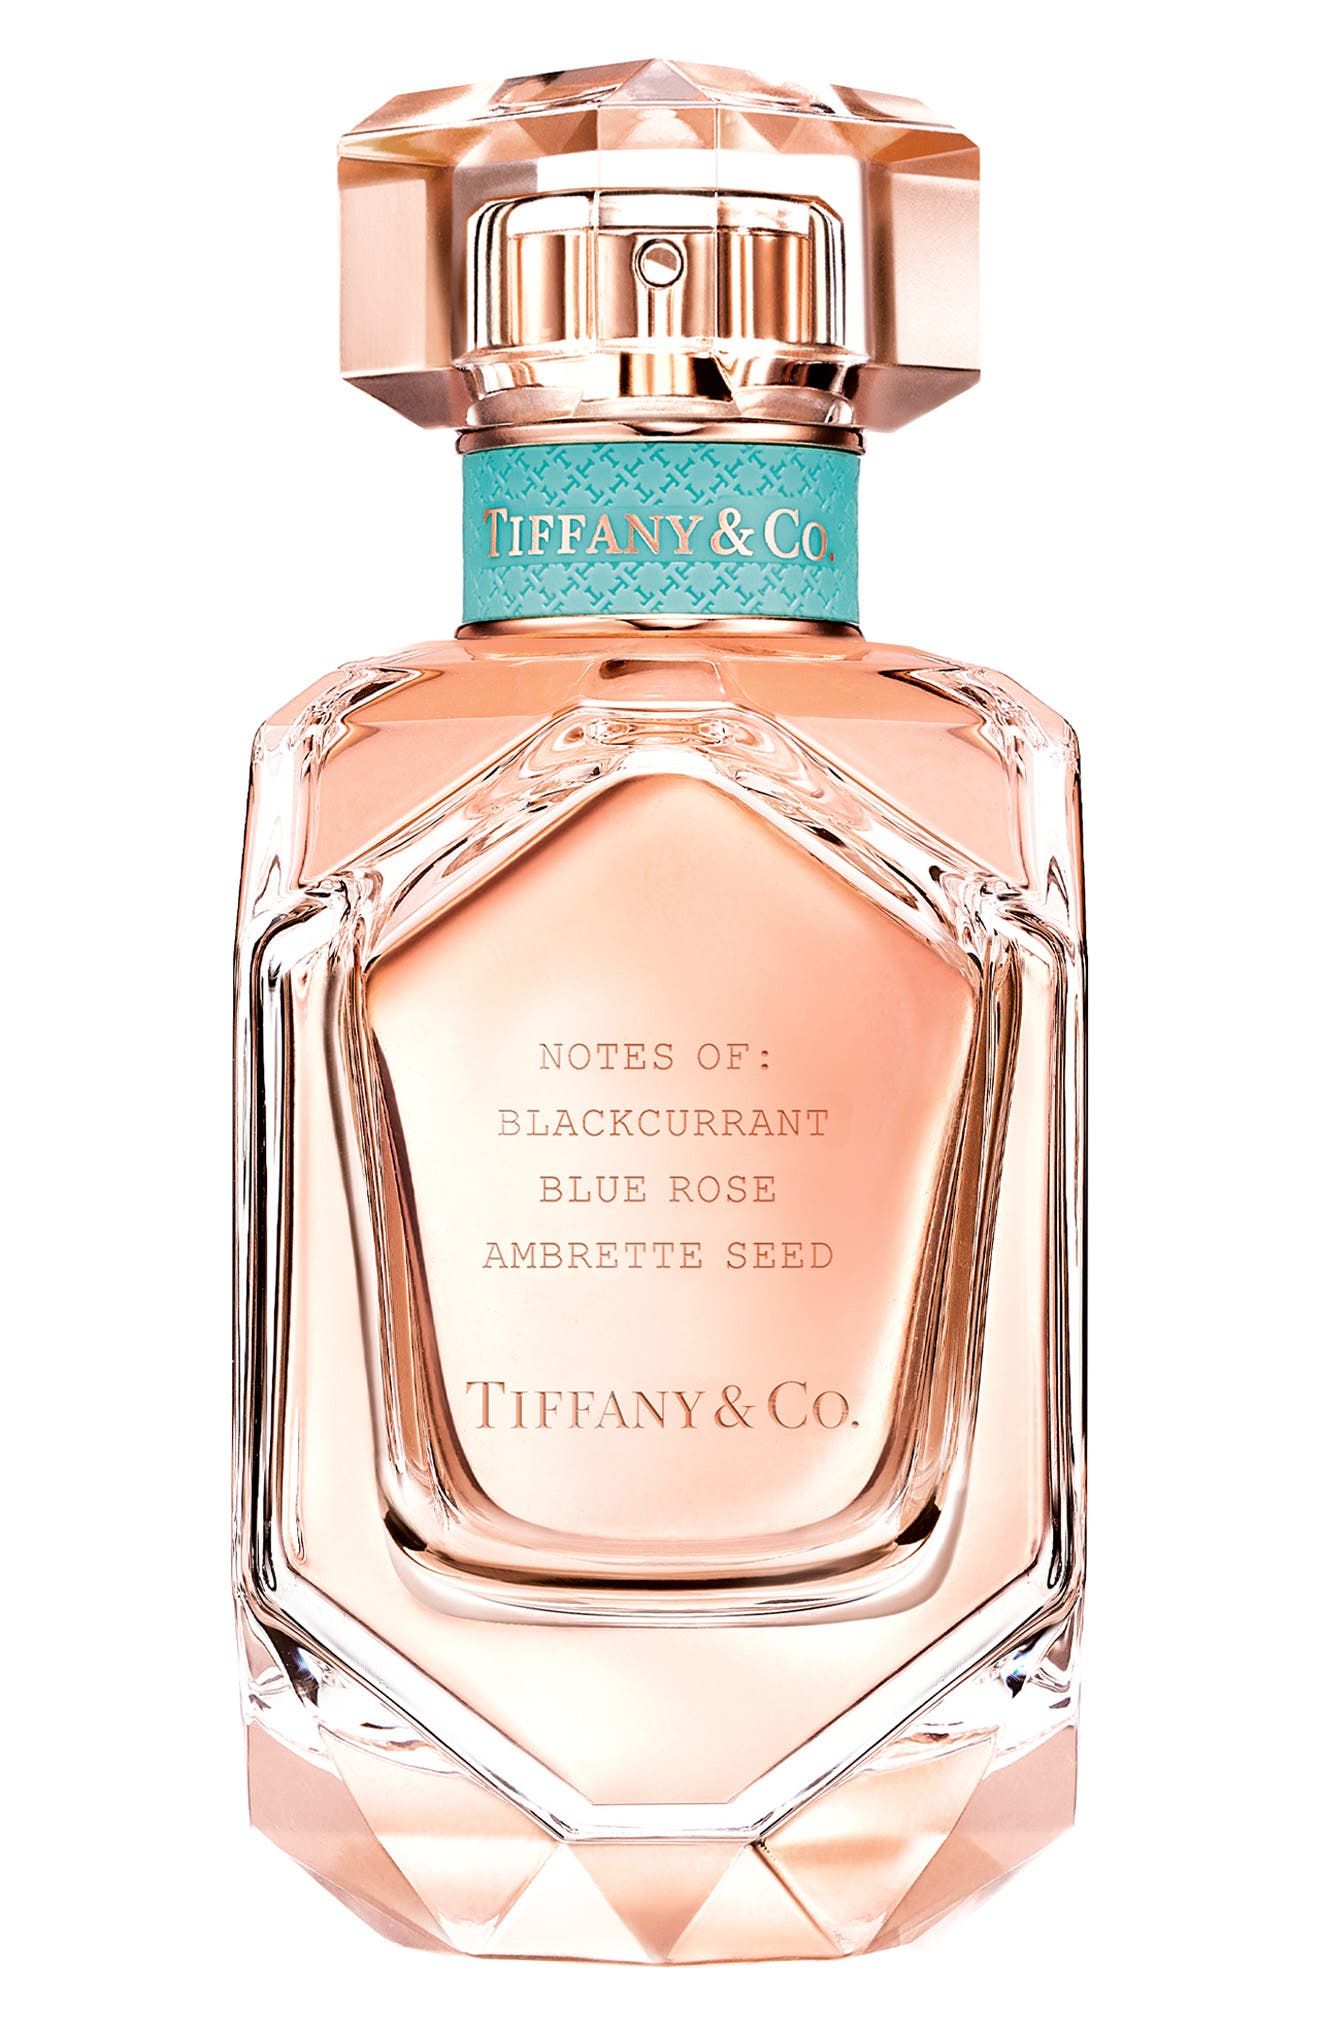 Tiffany & Co. Rose Gold Eau De Parfum, Size - 2.5 oz